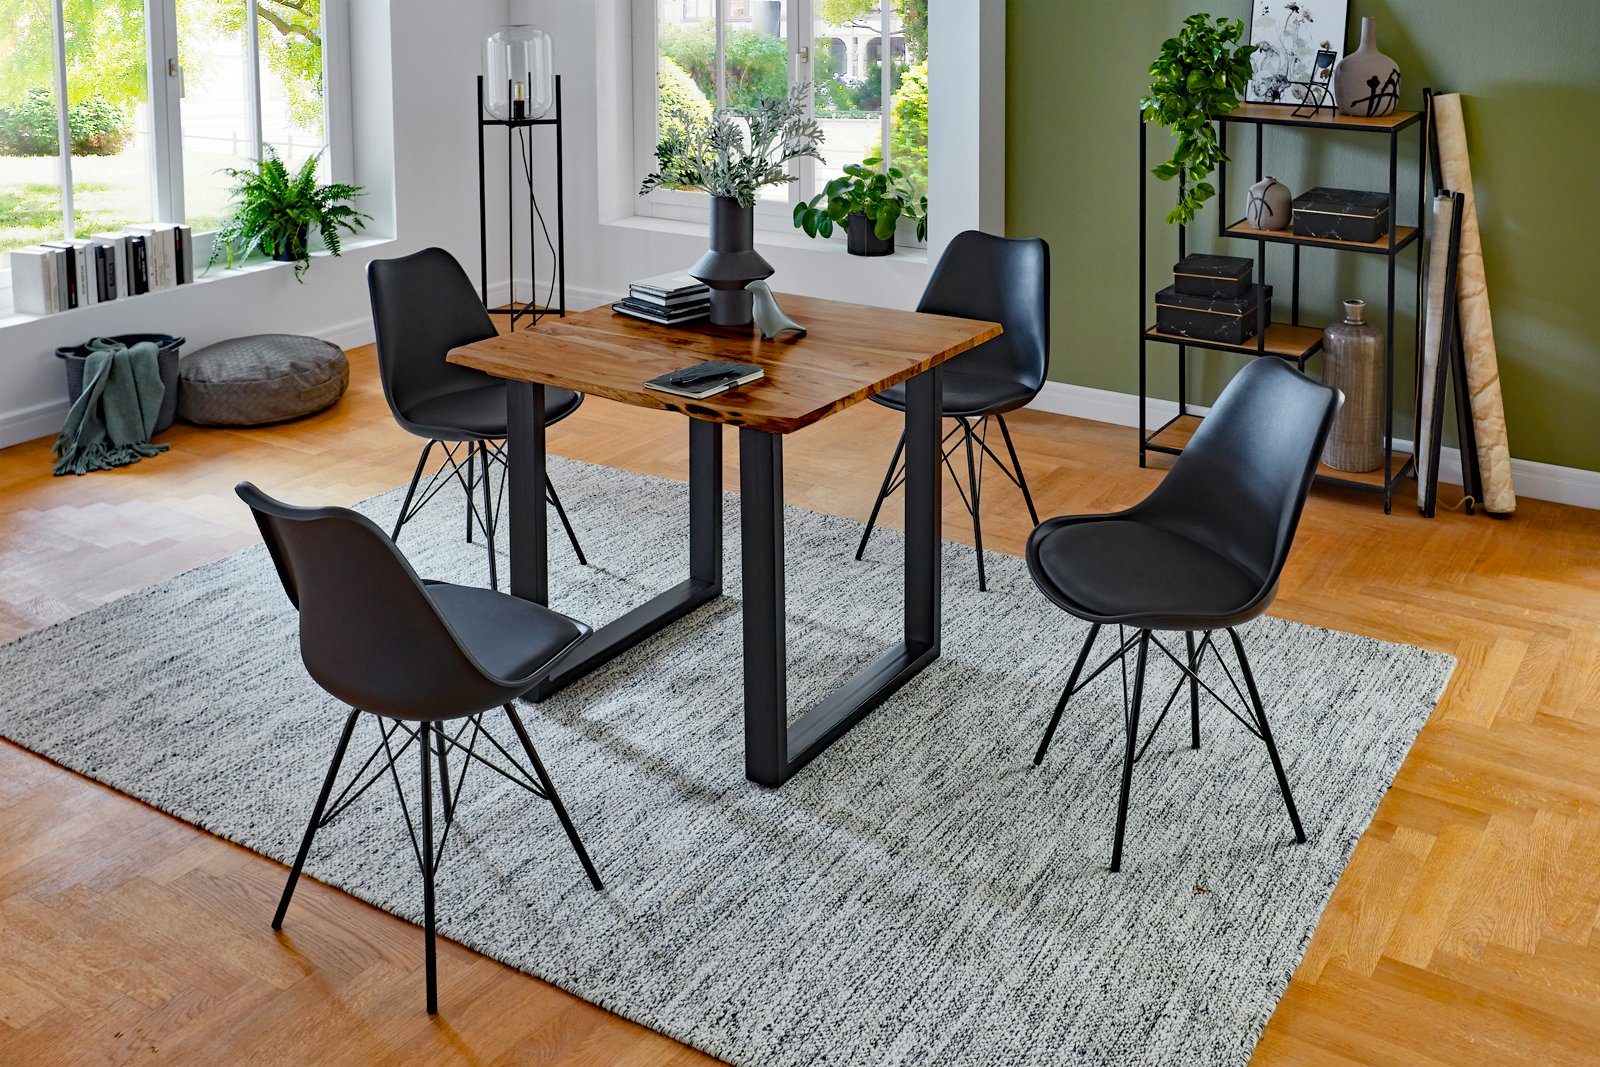 SAM® Essgruppe Jasmin, Akazienholz, naturfarben, und Stühle Schwarz Baumkante, 4 Metallgestell